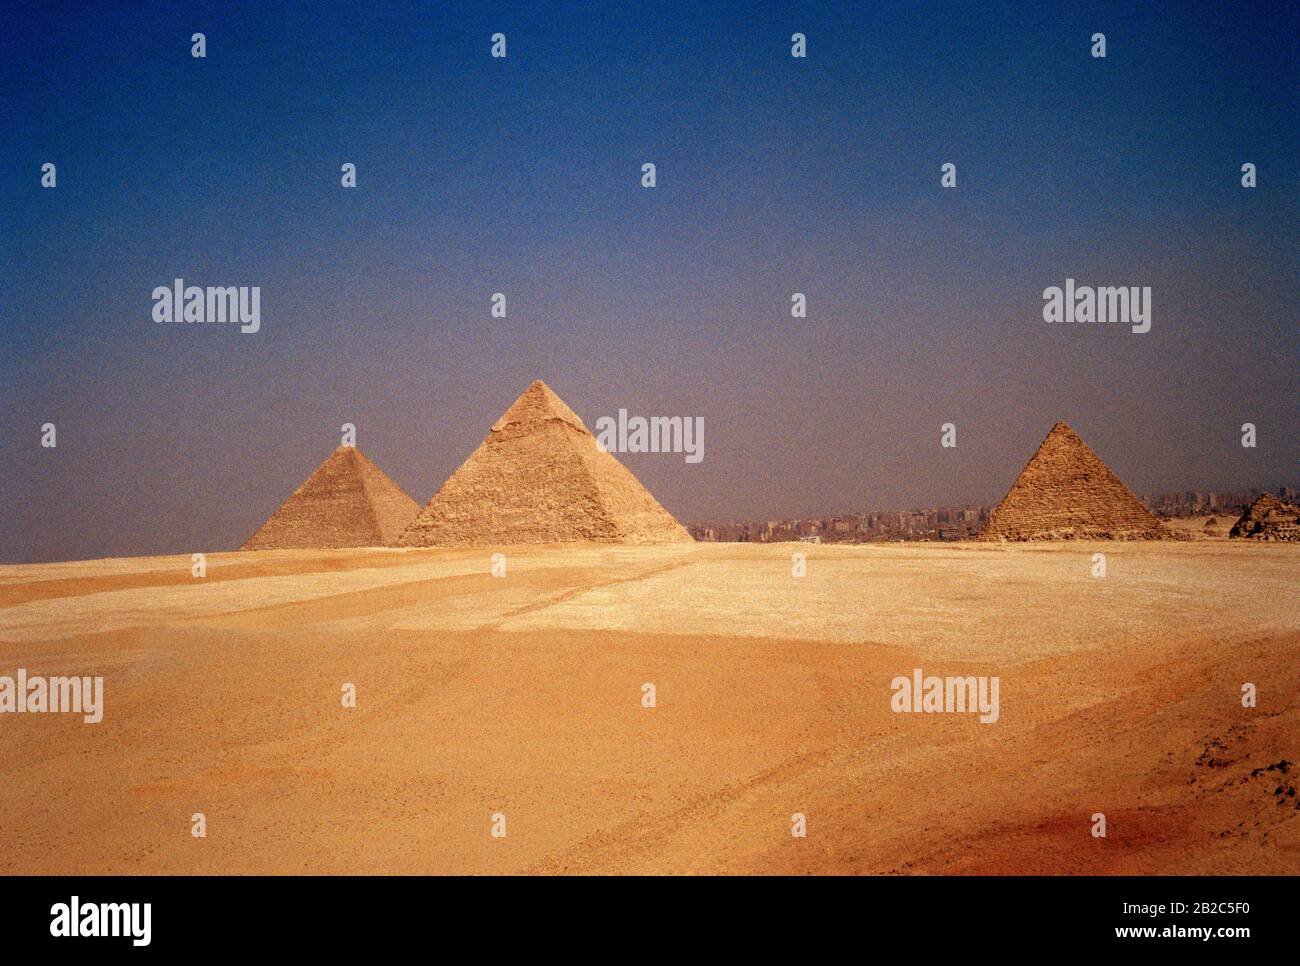 Viaggio - Piramide di Khafre e la Grande Piramide Cheope o Khufu e Piramide di Menkaure alle Piramidi di Giza al Cairo in Egitto nel Nord Africa Foto Stock